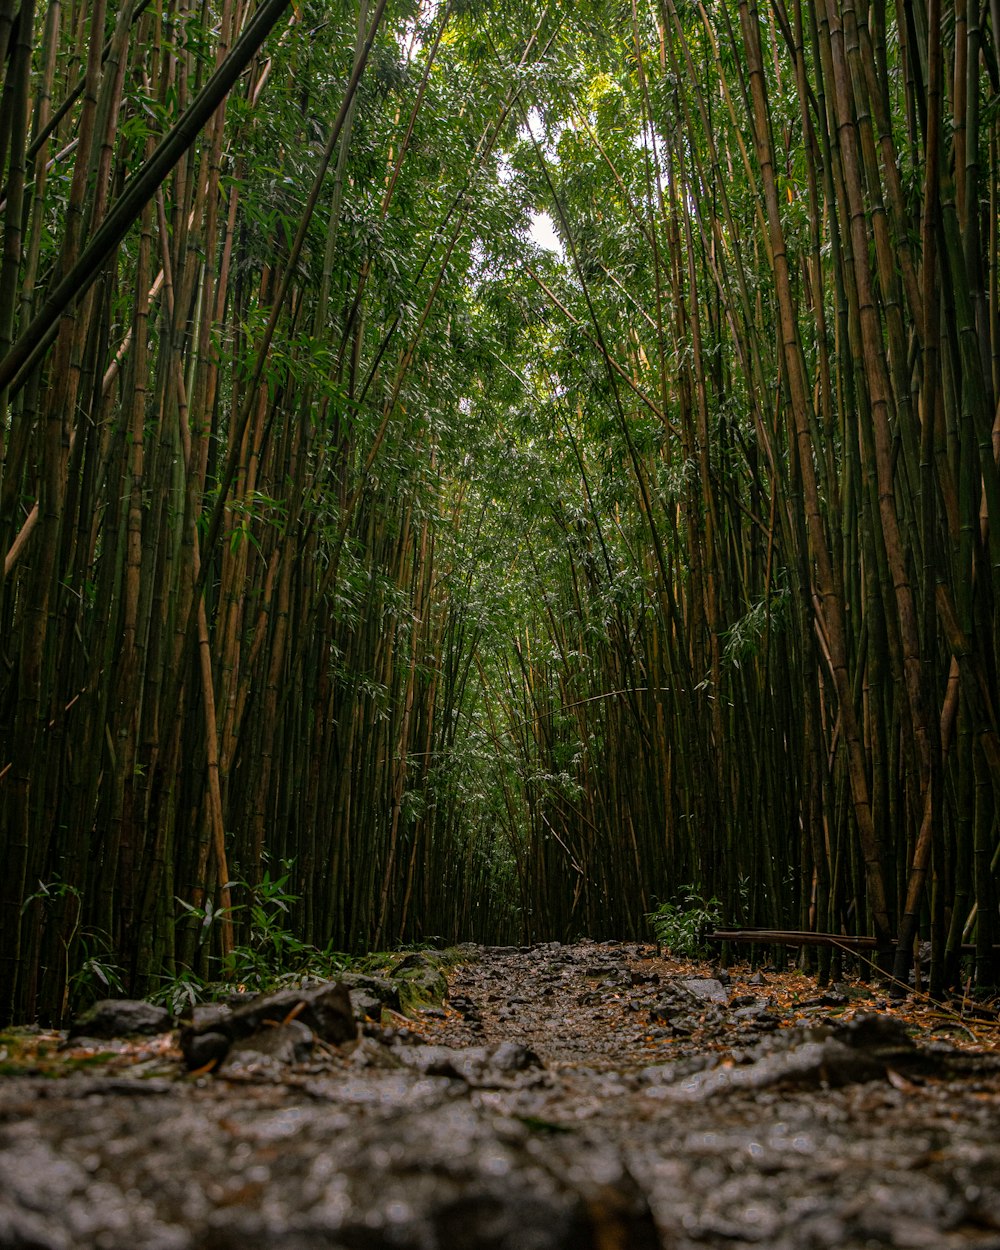 Grüne Bambusbäume tagsüber